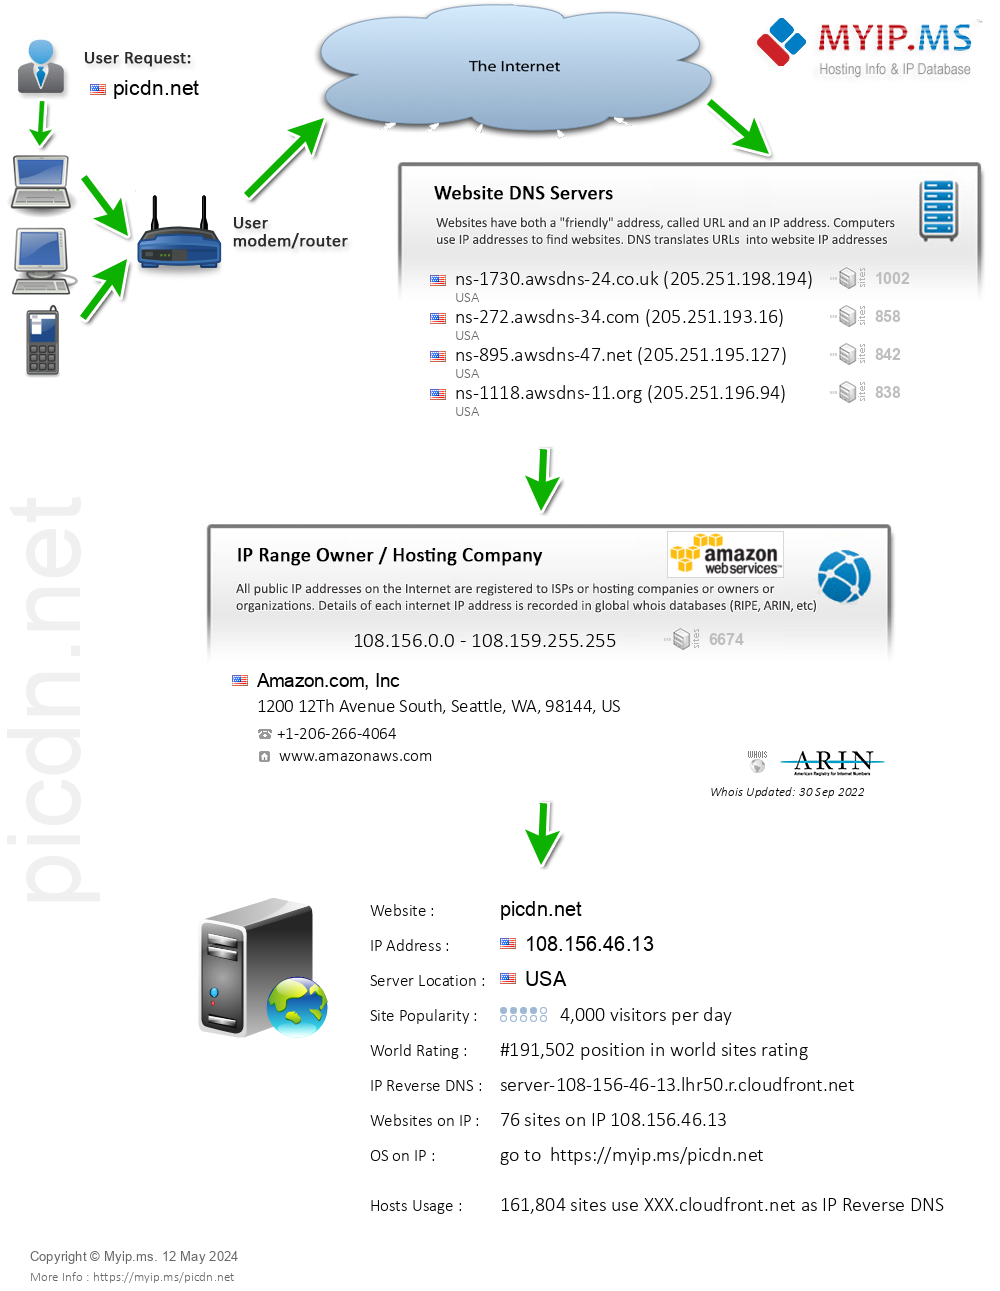 Picdn.net - Website Hosting Visual IP Diagram